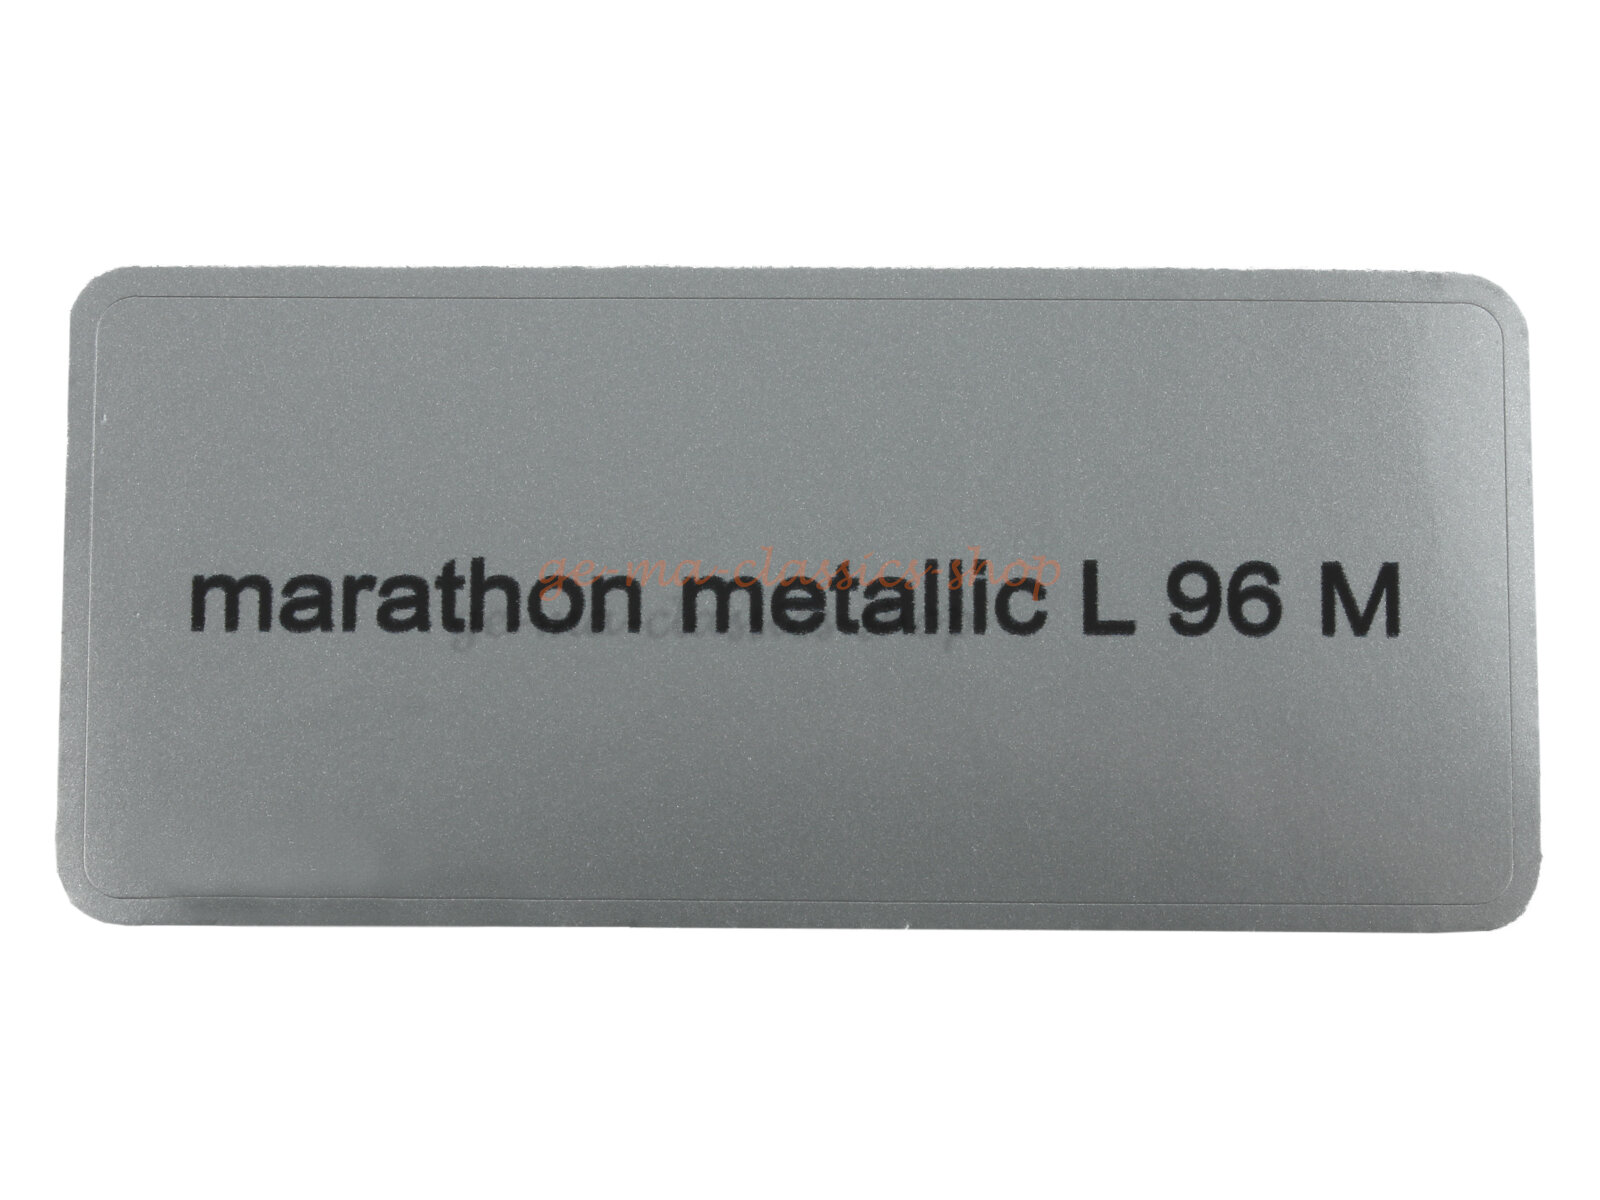 Aufkleber "marathon metallic L 96 M" Farbcode Sticker